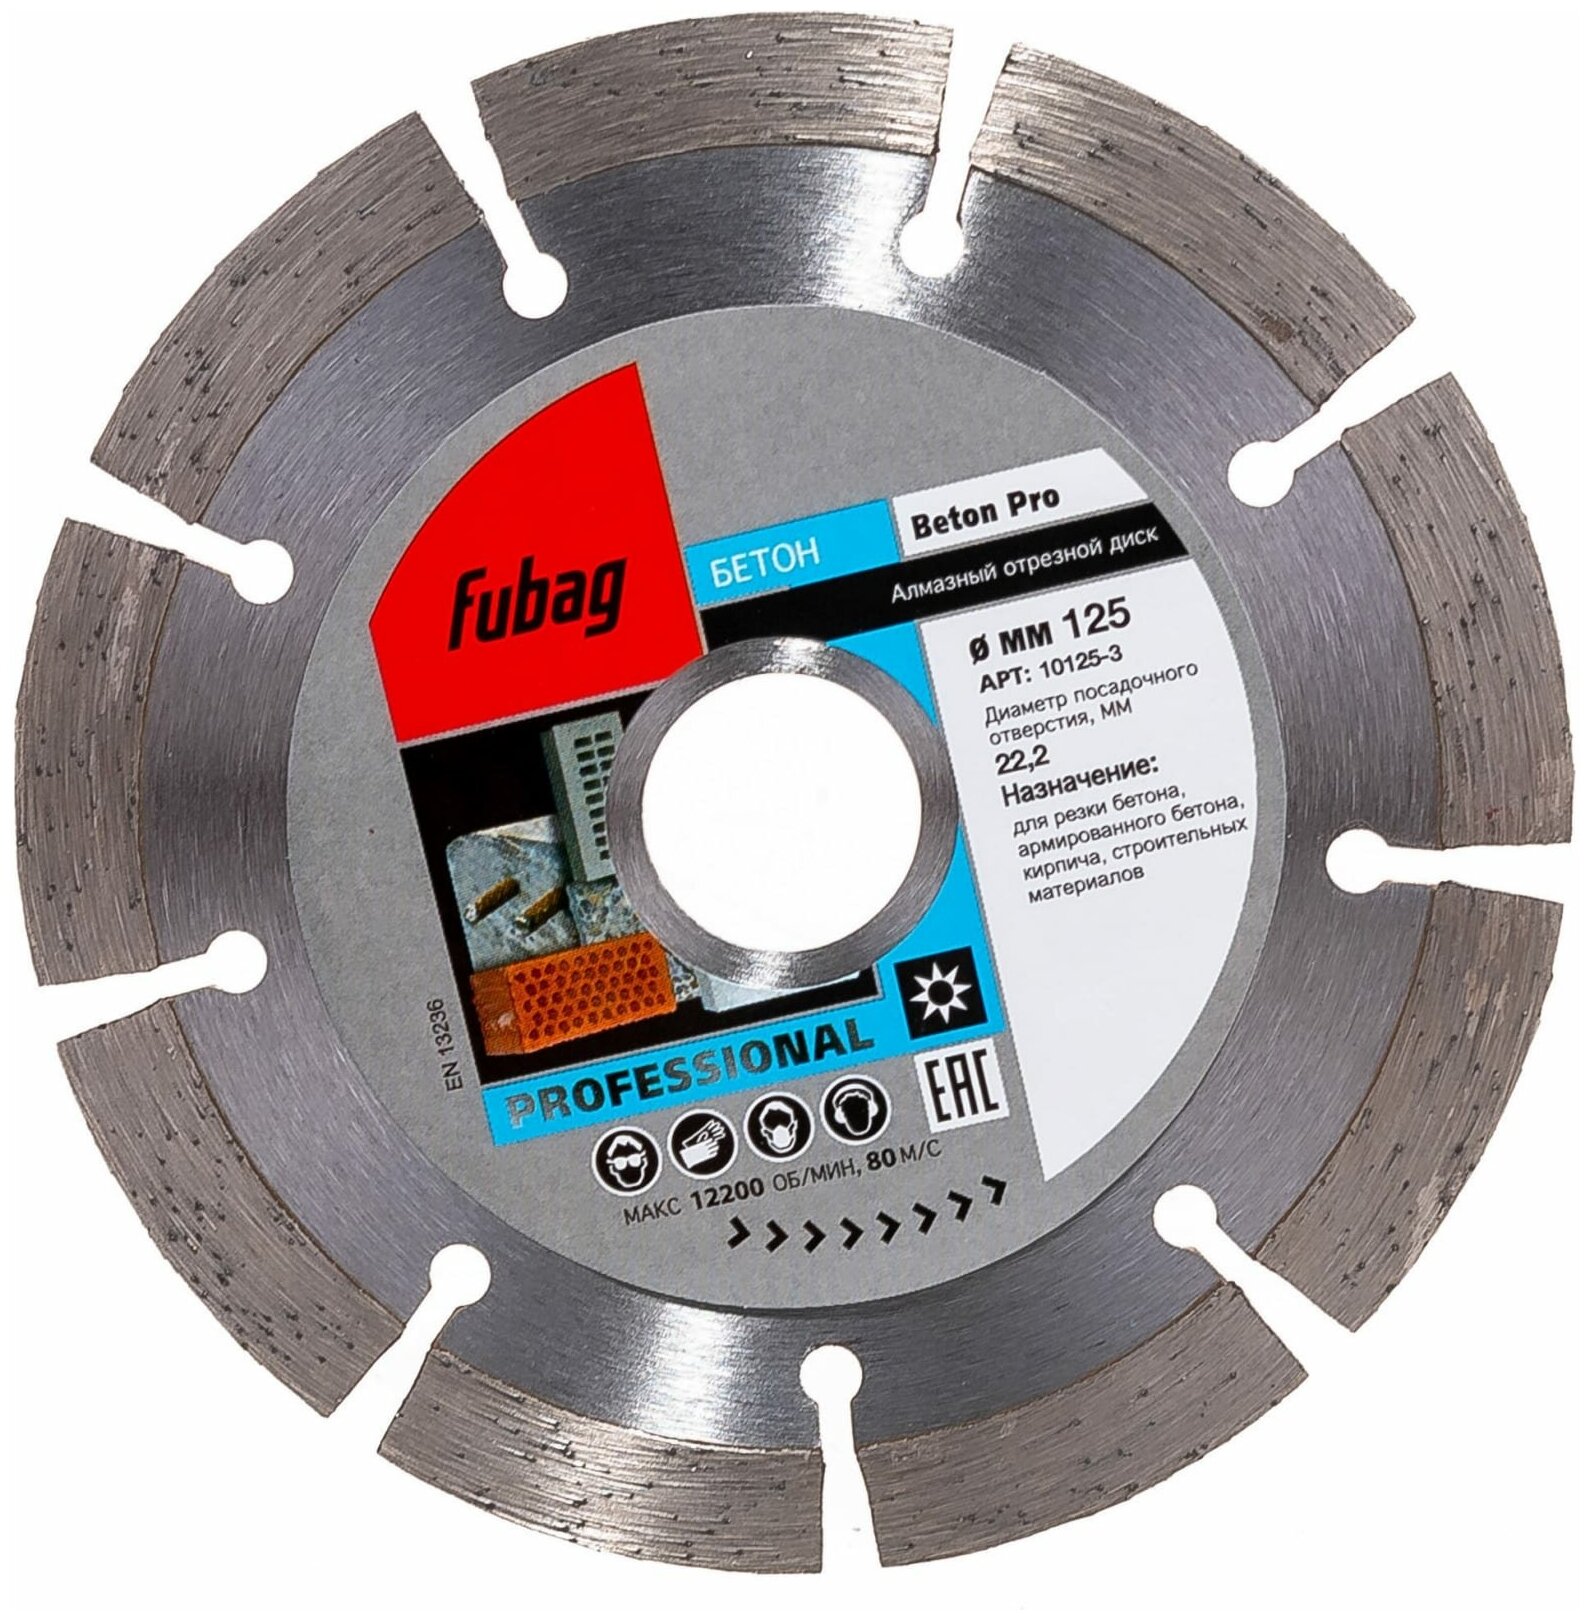 Алмазный диск FUBAG Beton Pro 125/22.2, по бетону, 125мм [10125-3] - фото №3